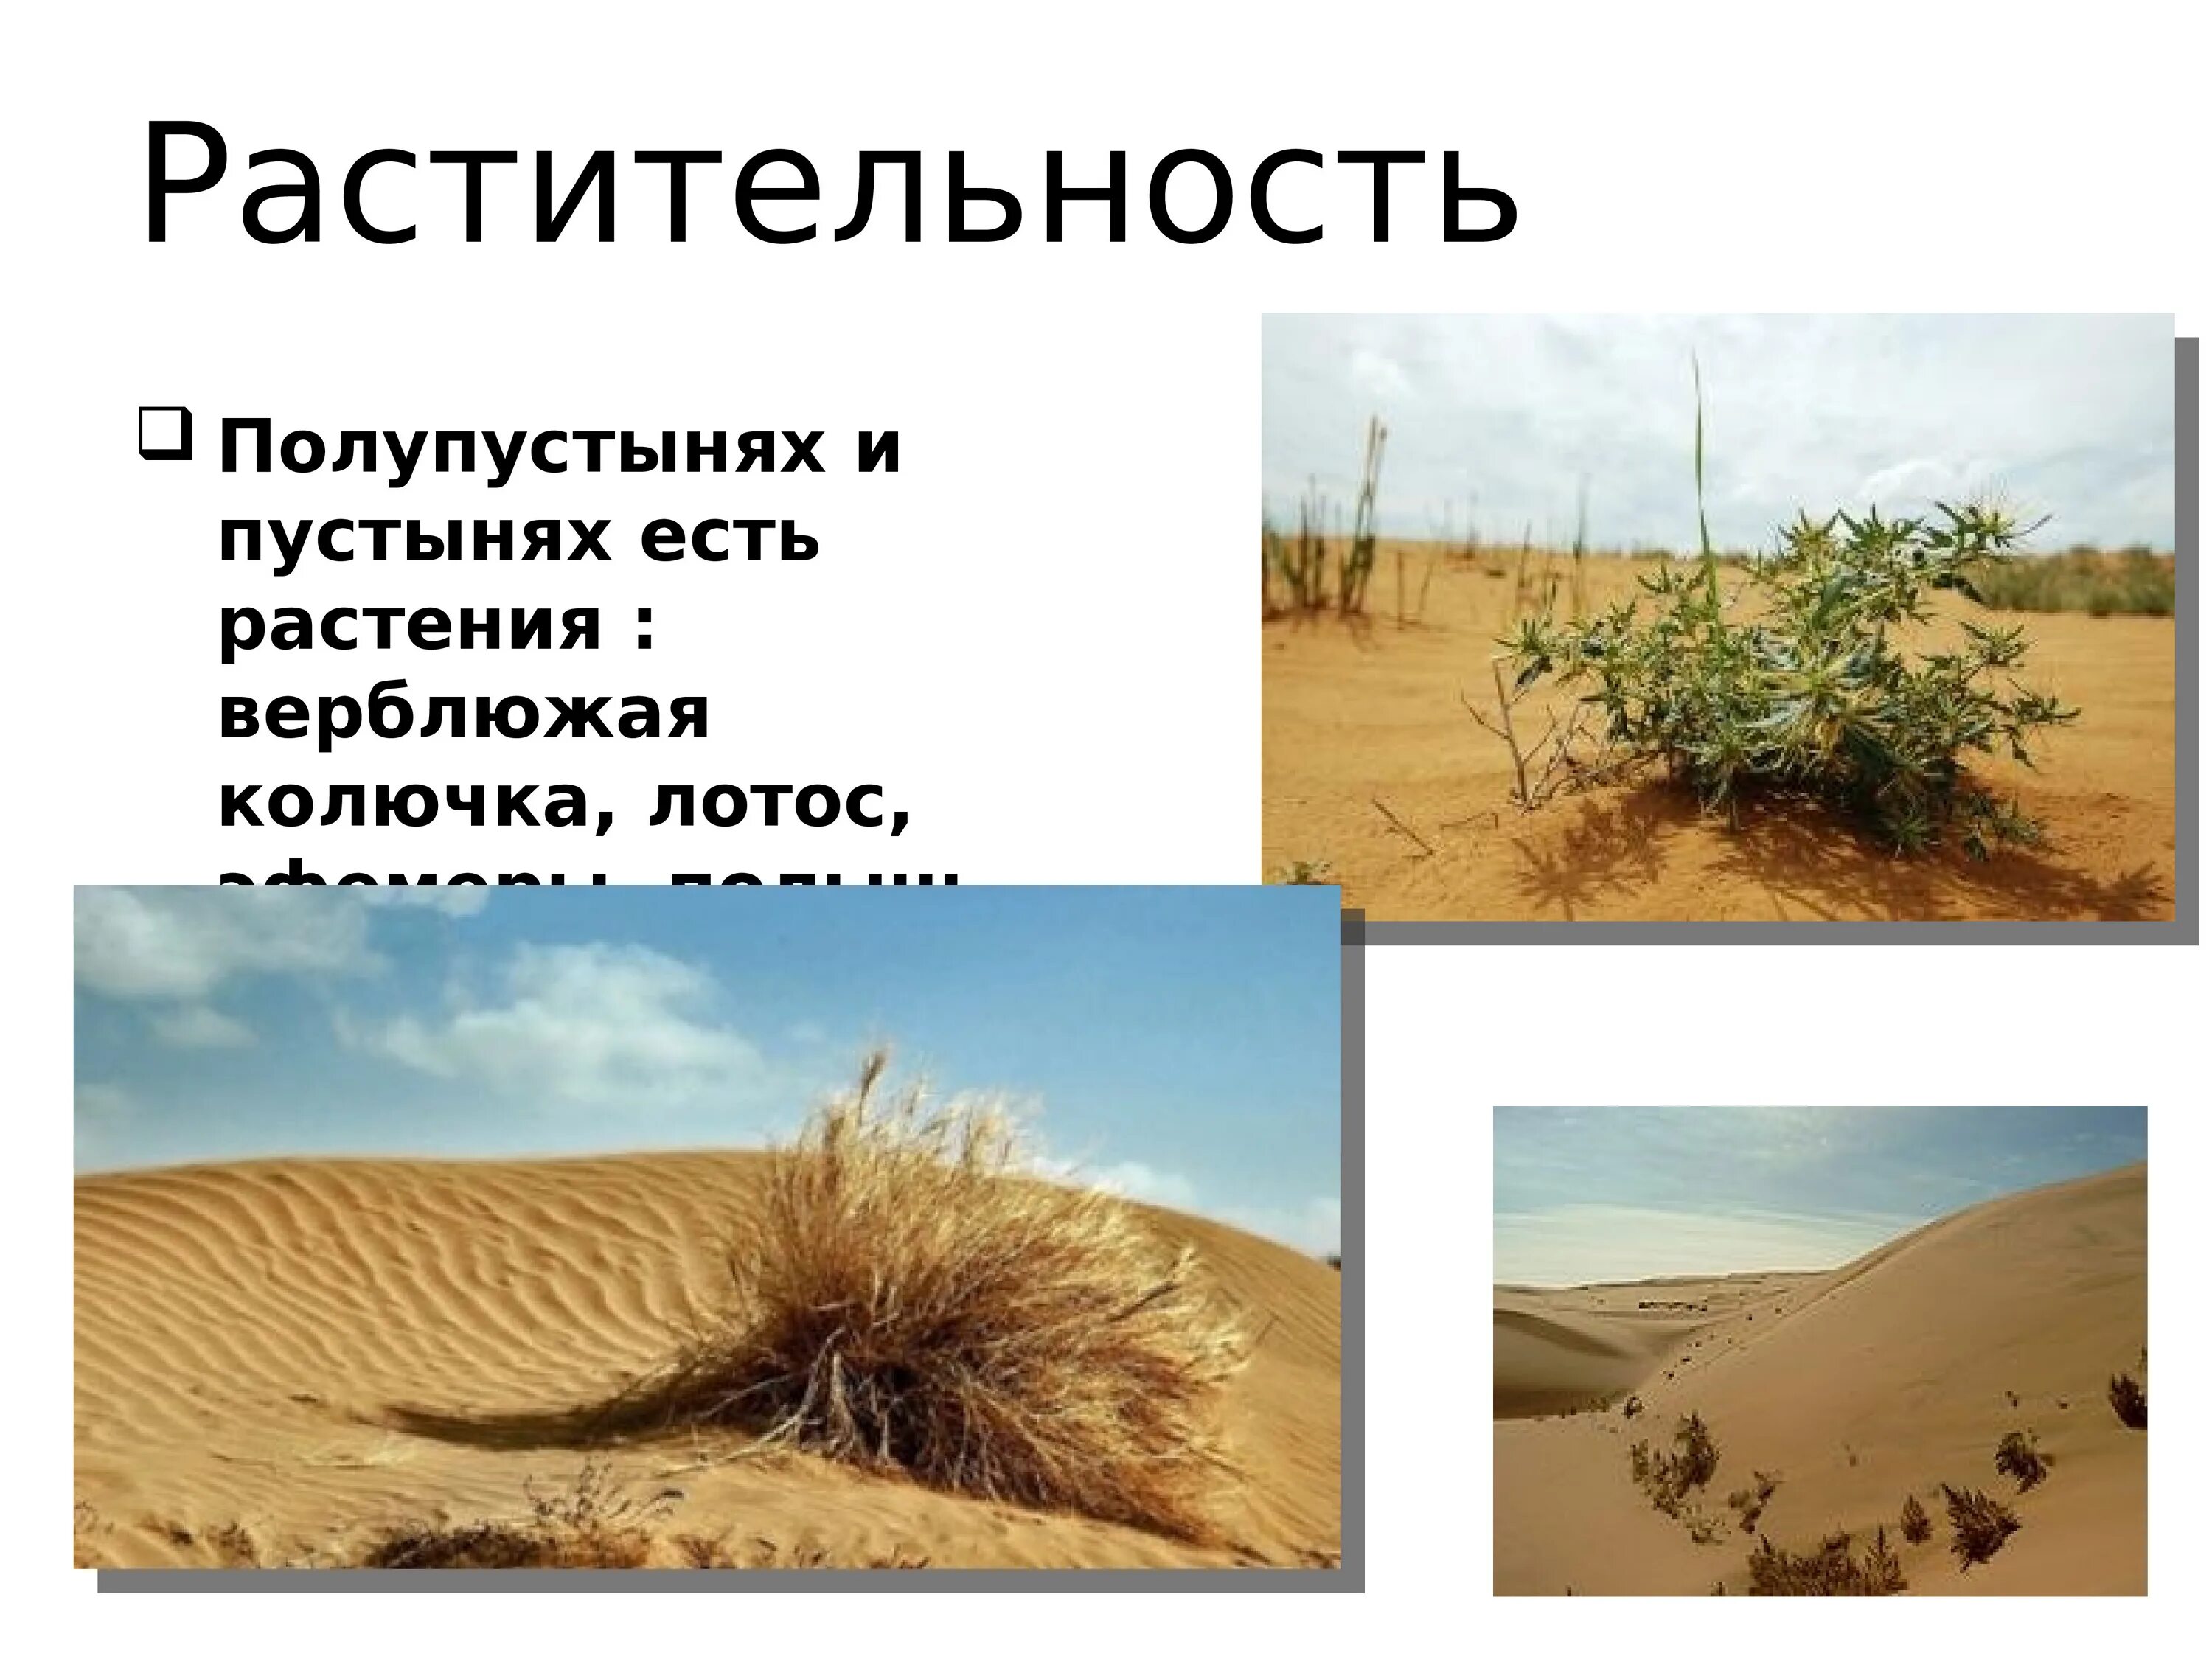 Растительный мир пустынь и полупустынь россии. Растительный мир зоны пустынь и полупустынь России. Растительный мир пустыни и полупустыни. Растительность в зоне пустынь и полупустынь. Растительность в пустынях и полупустынях.